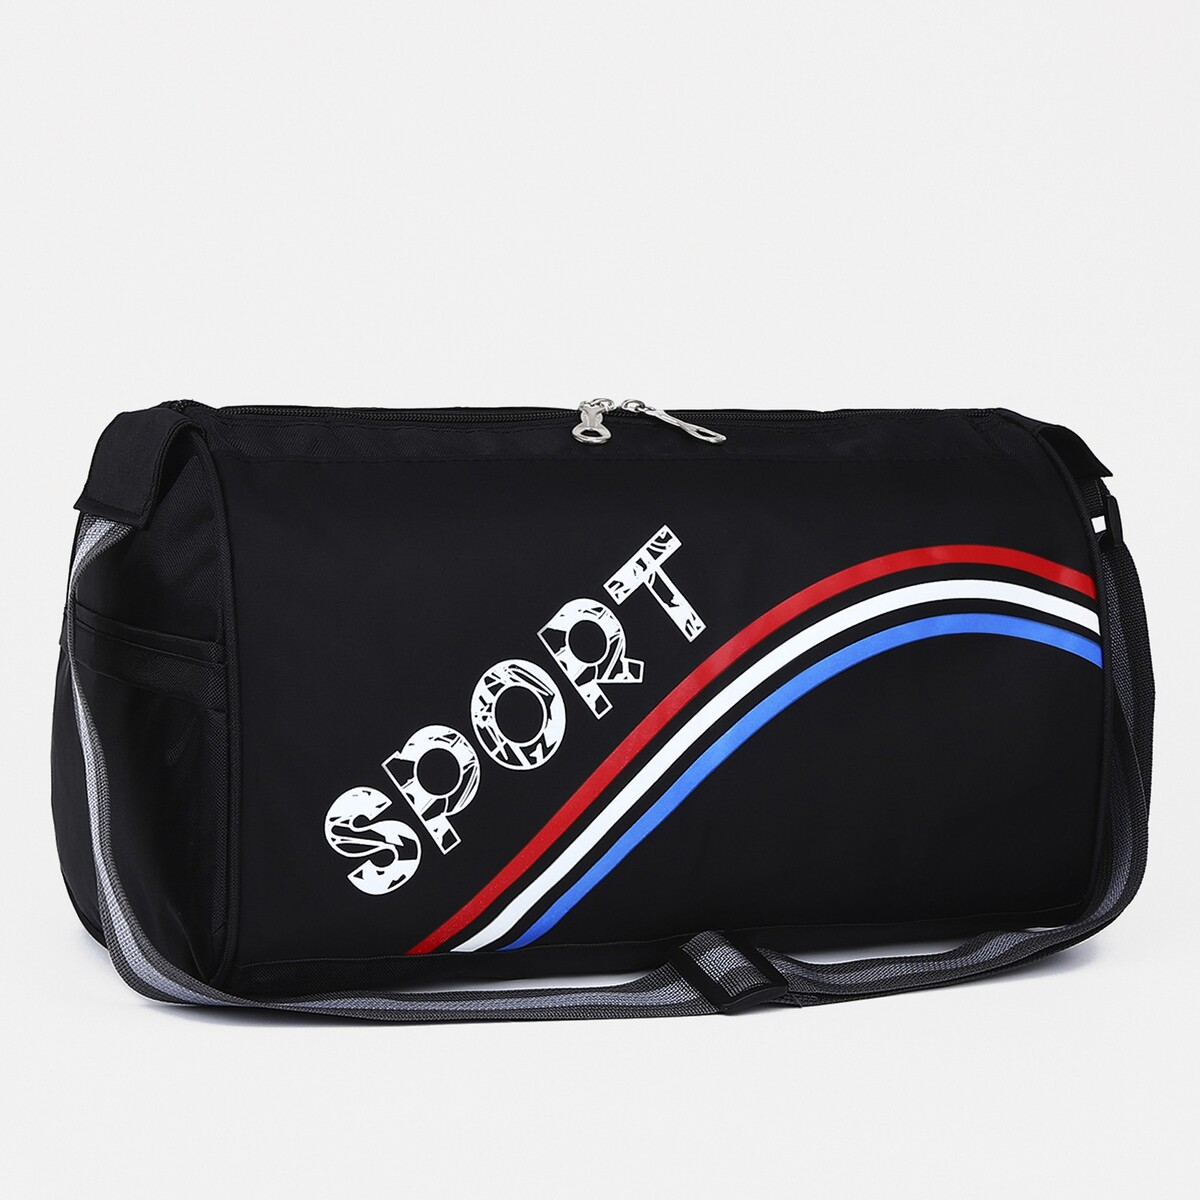 Сумка спортивная на молнии, длинный ремень, цвет черный/триколор сумка спортивная на руку onlytop 18х12 см